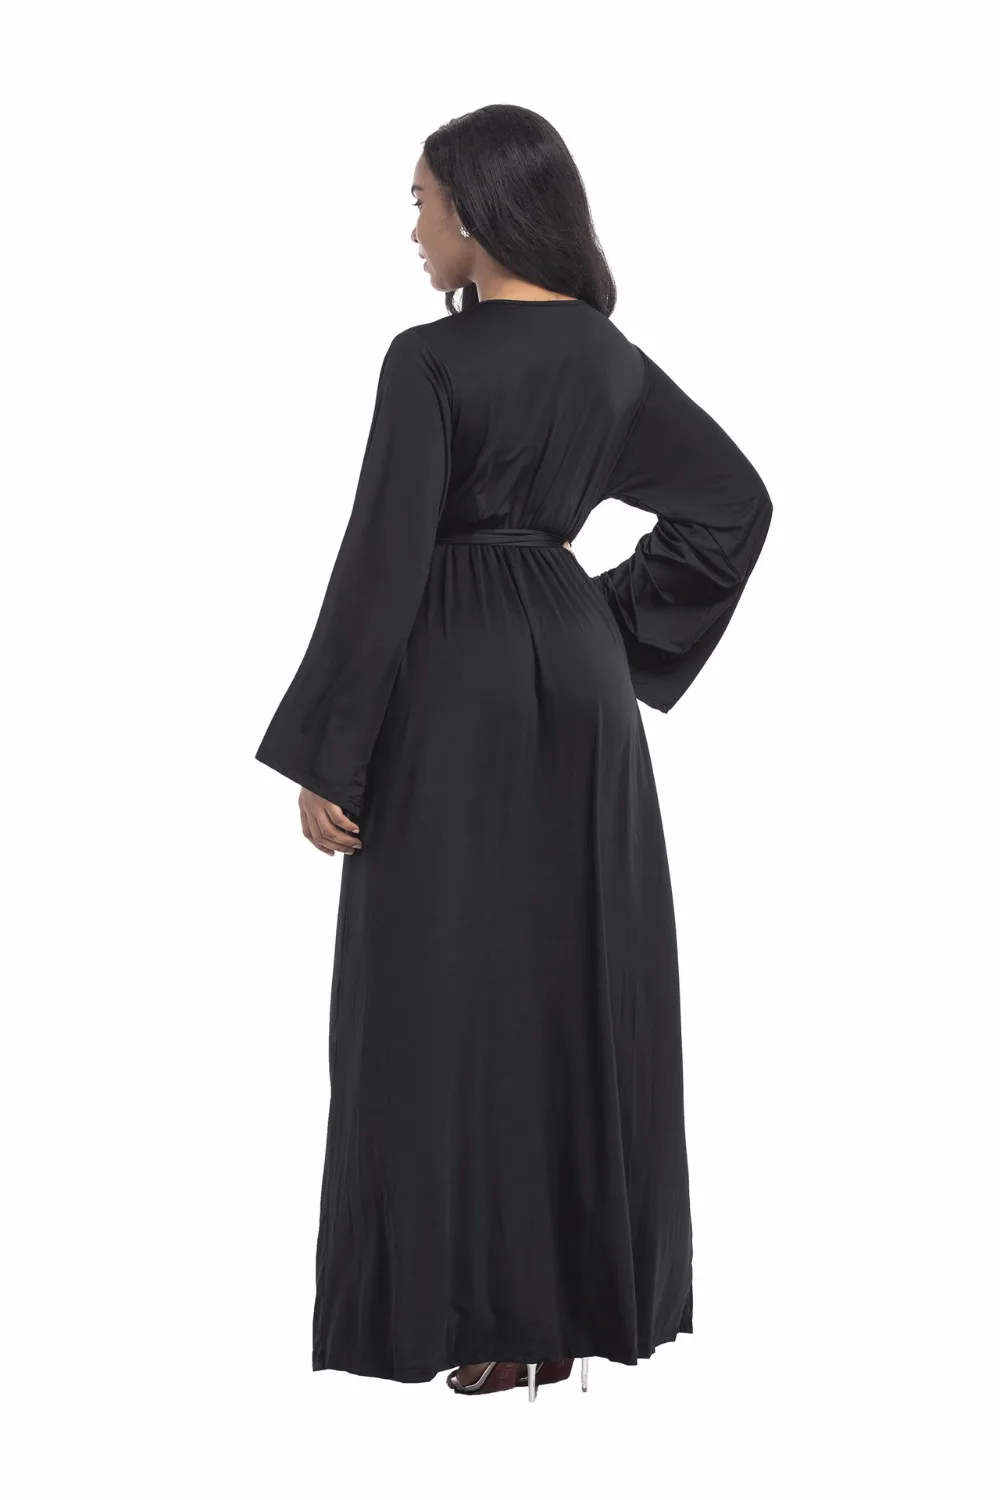 С v-образной горловиной и длинными рукавами вечернее платье для беременных Для женщин элегантная одежда Беременность леди Vestidos беременных Костюмы